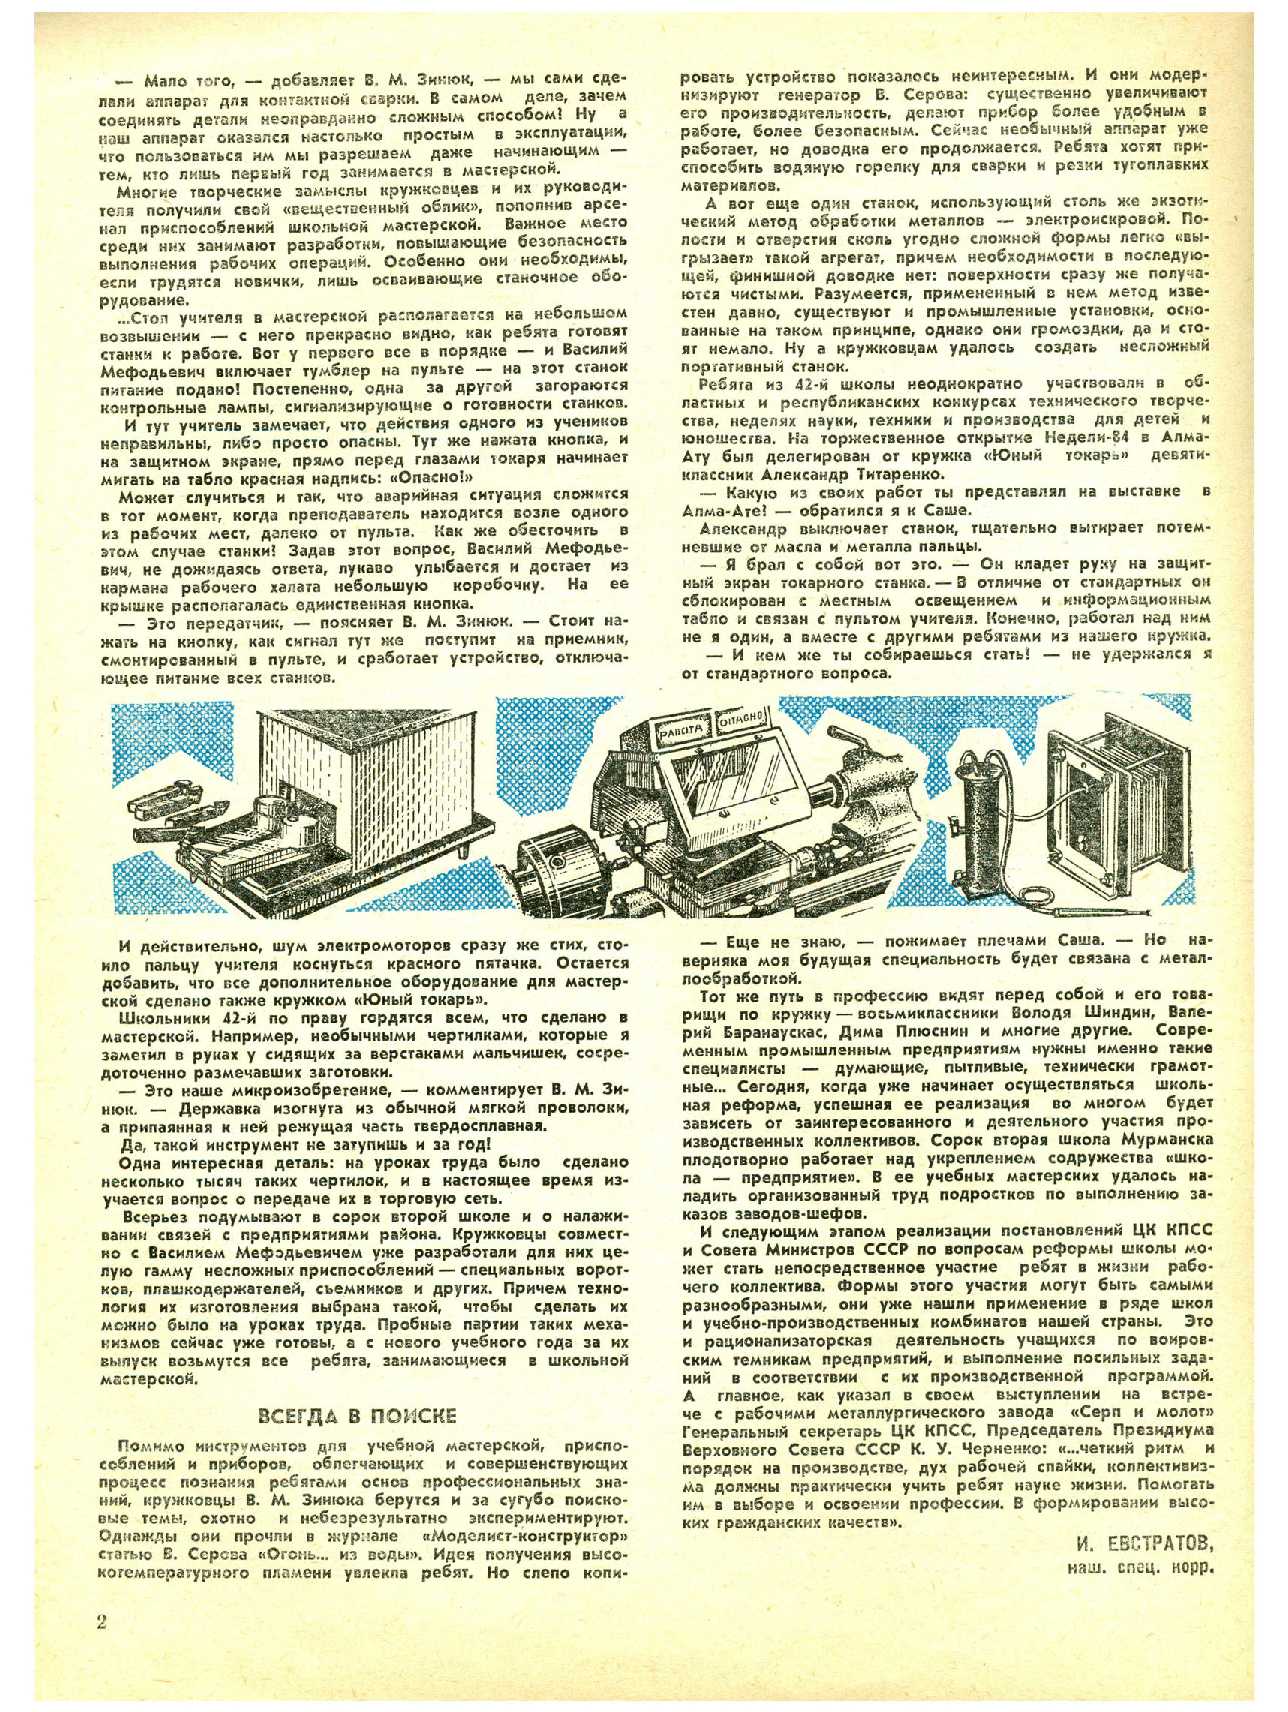 МК 8, 1984, 2 c.